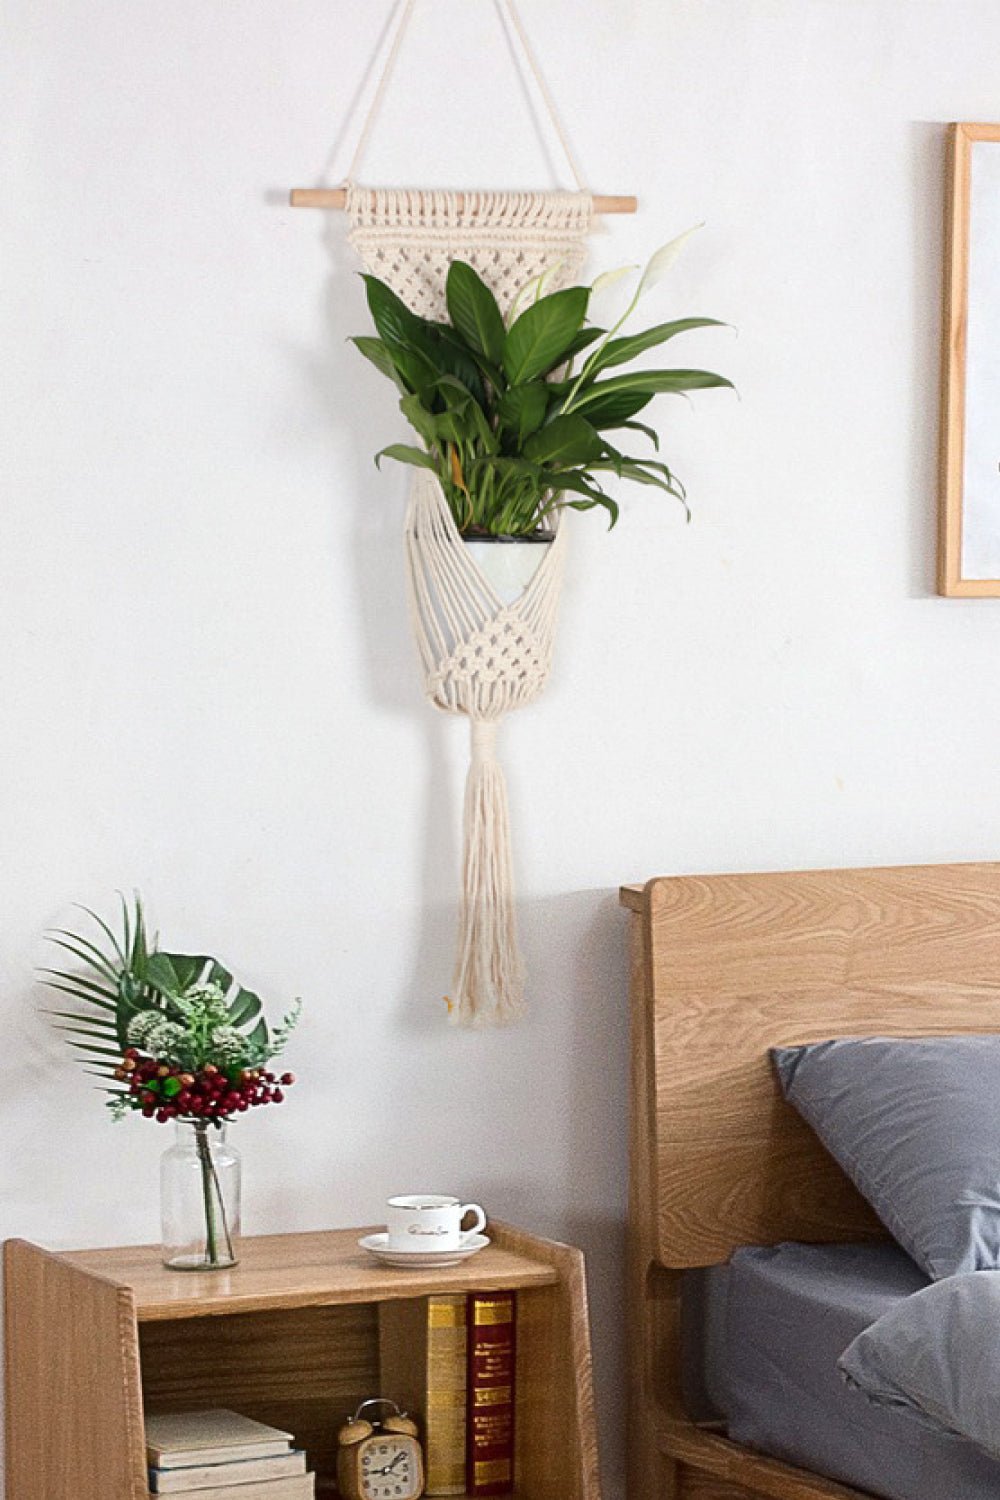 Macrame Basket Wall Hanging - Tangerine Goddess